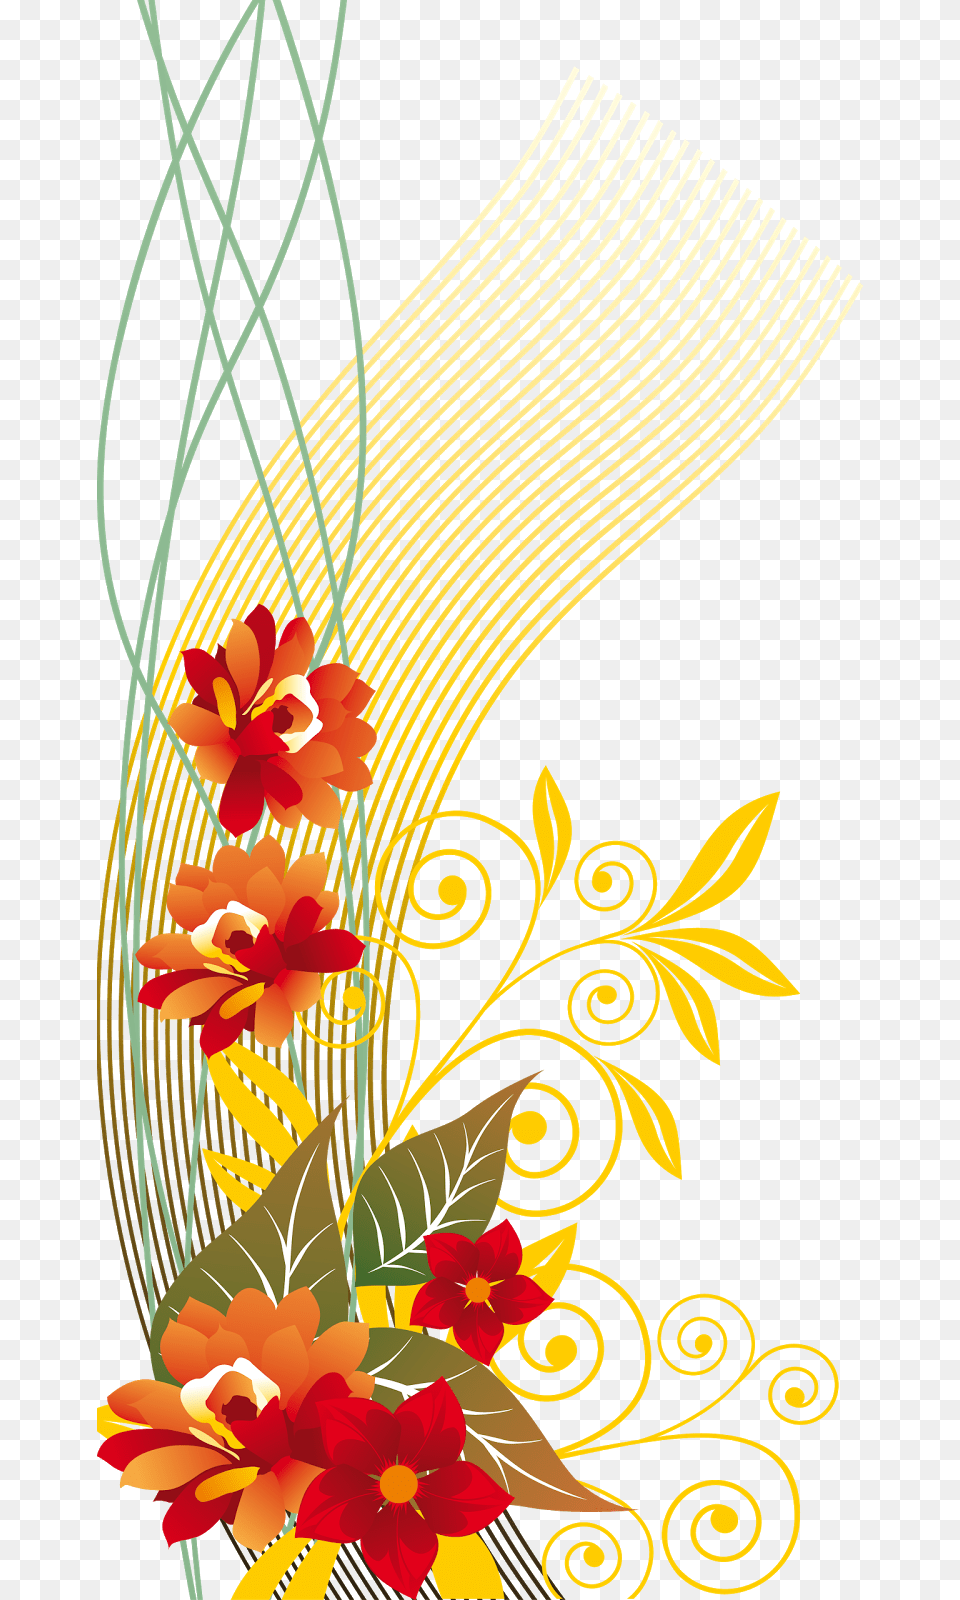 Drawing, Art, Floral Design, Flower, Flower Arrangement Png Image